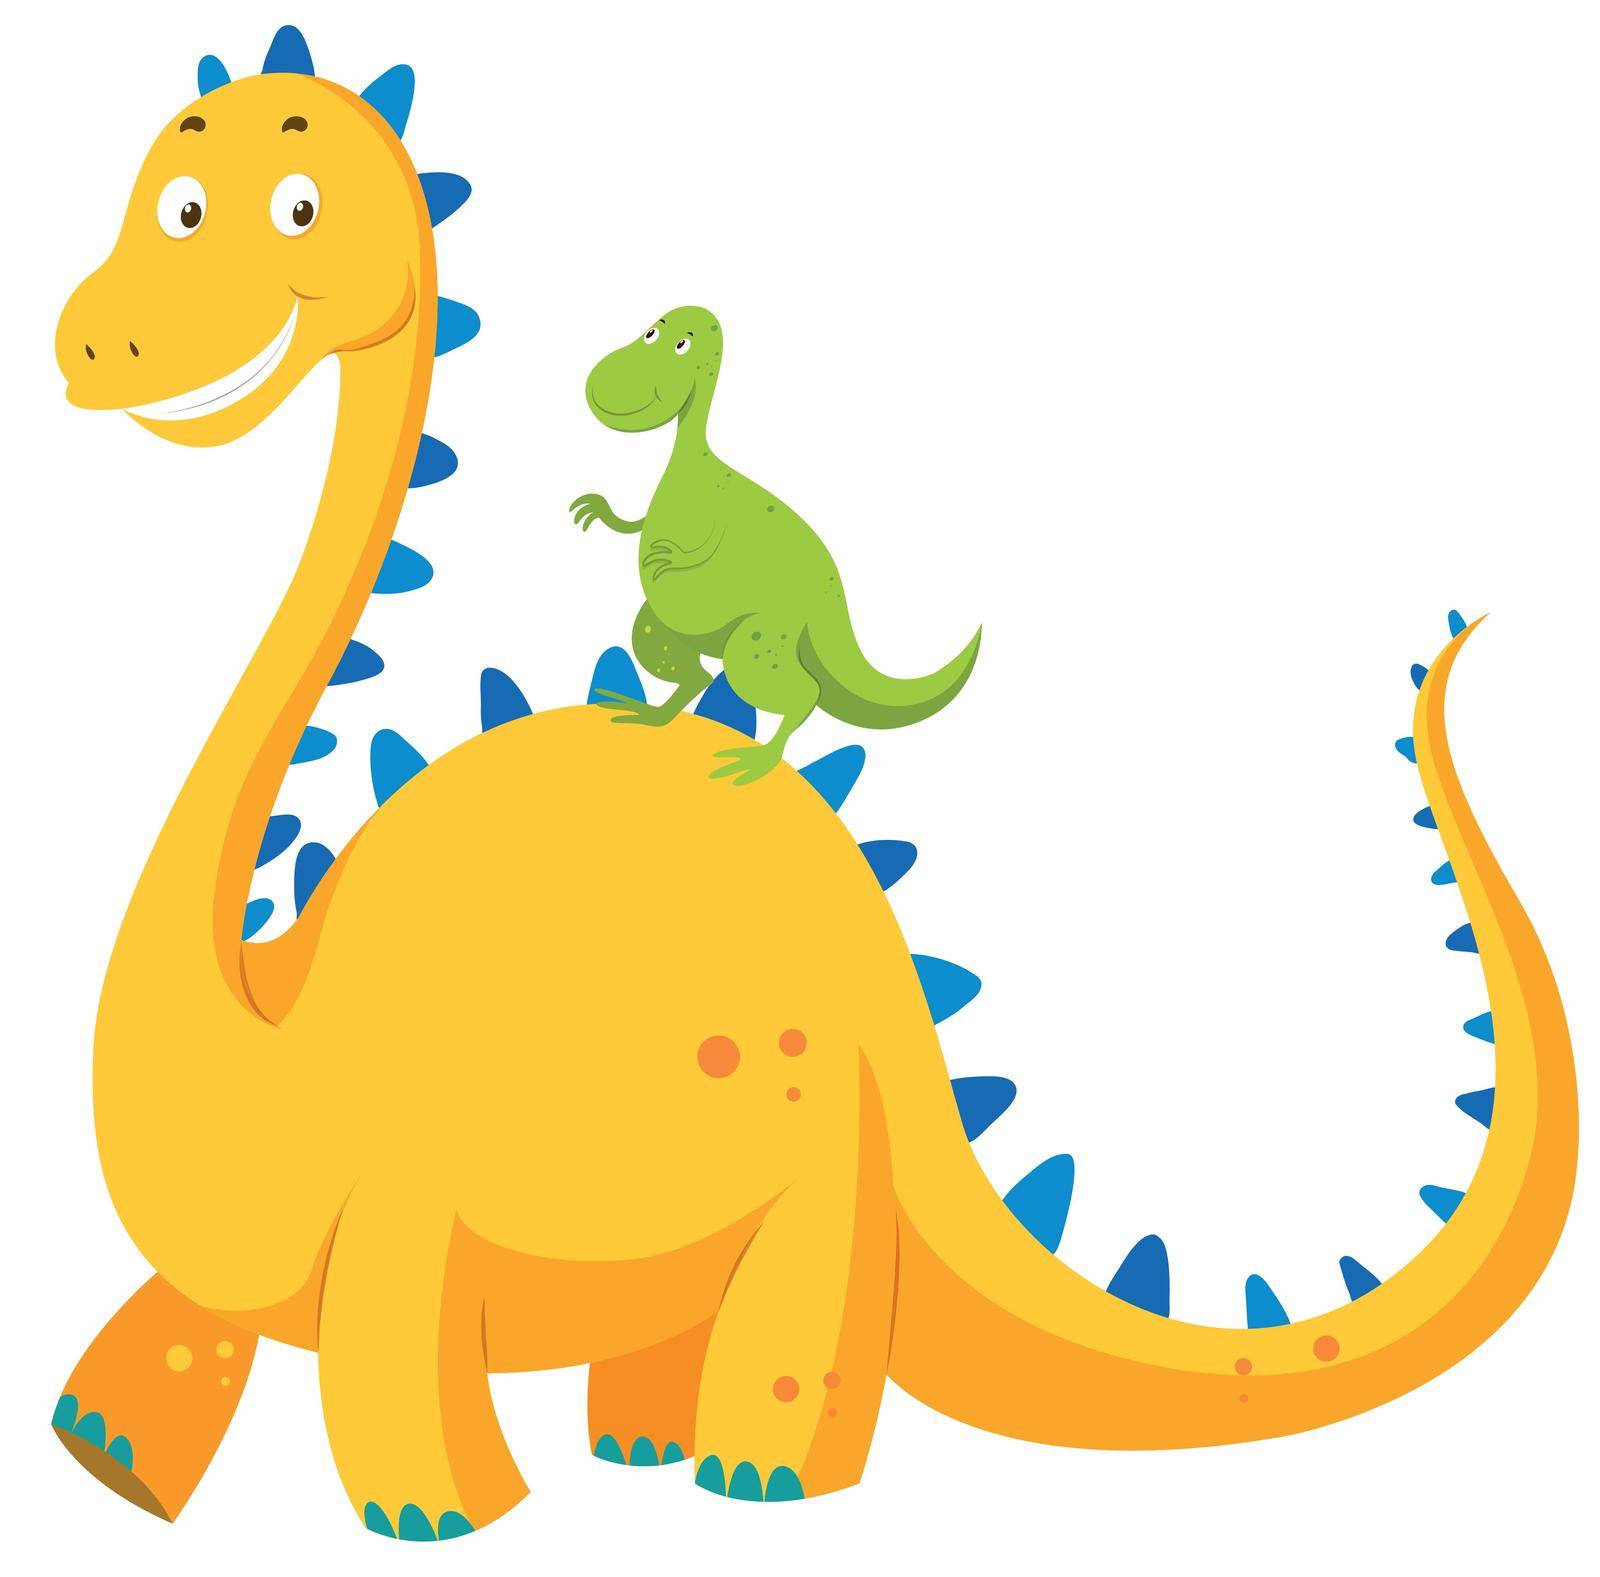 Big dinosaur and small dinosaur illustration